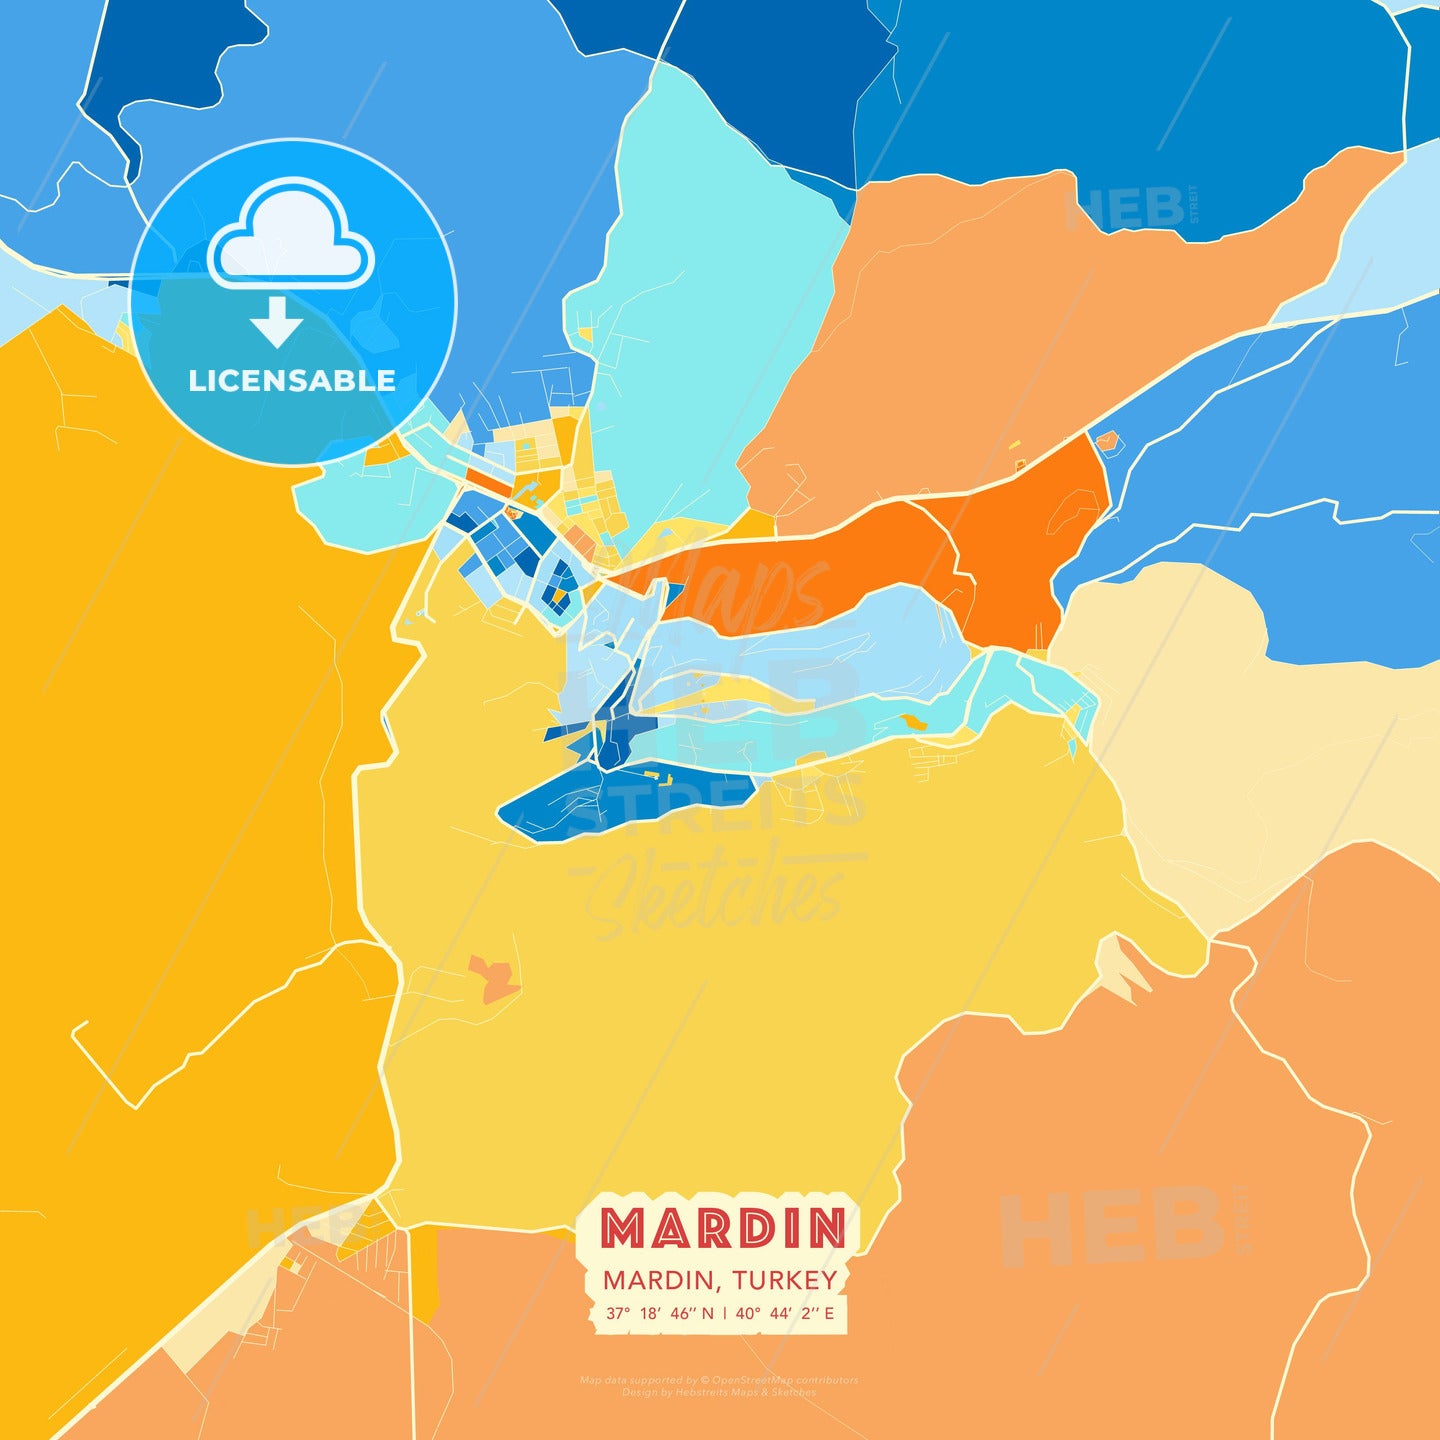 Mardin, Mardin, Turkey, map - HEBSTREITS Sketches